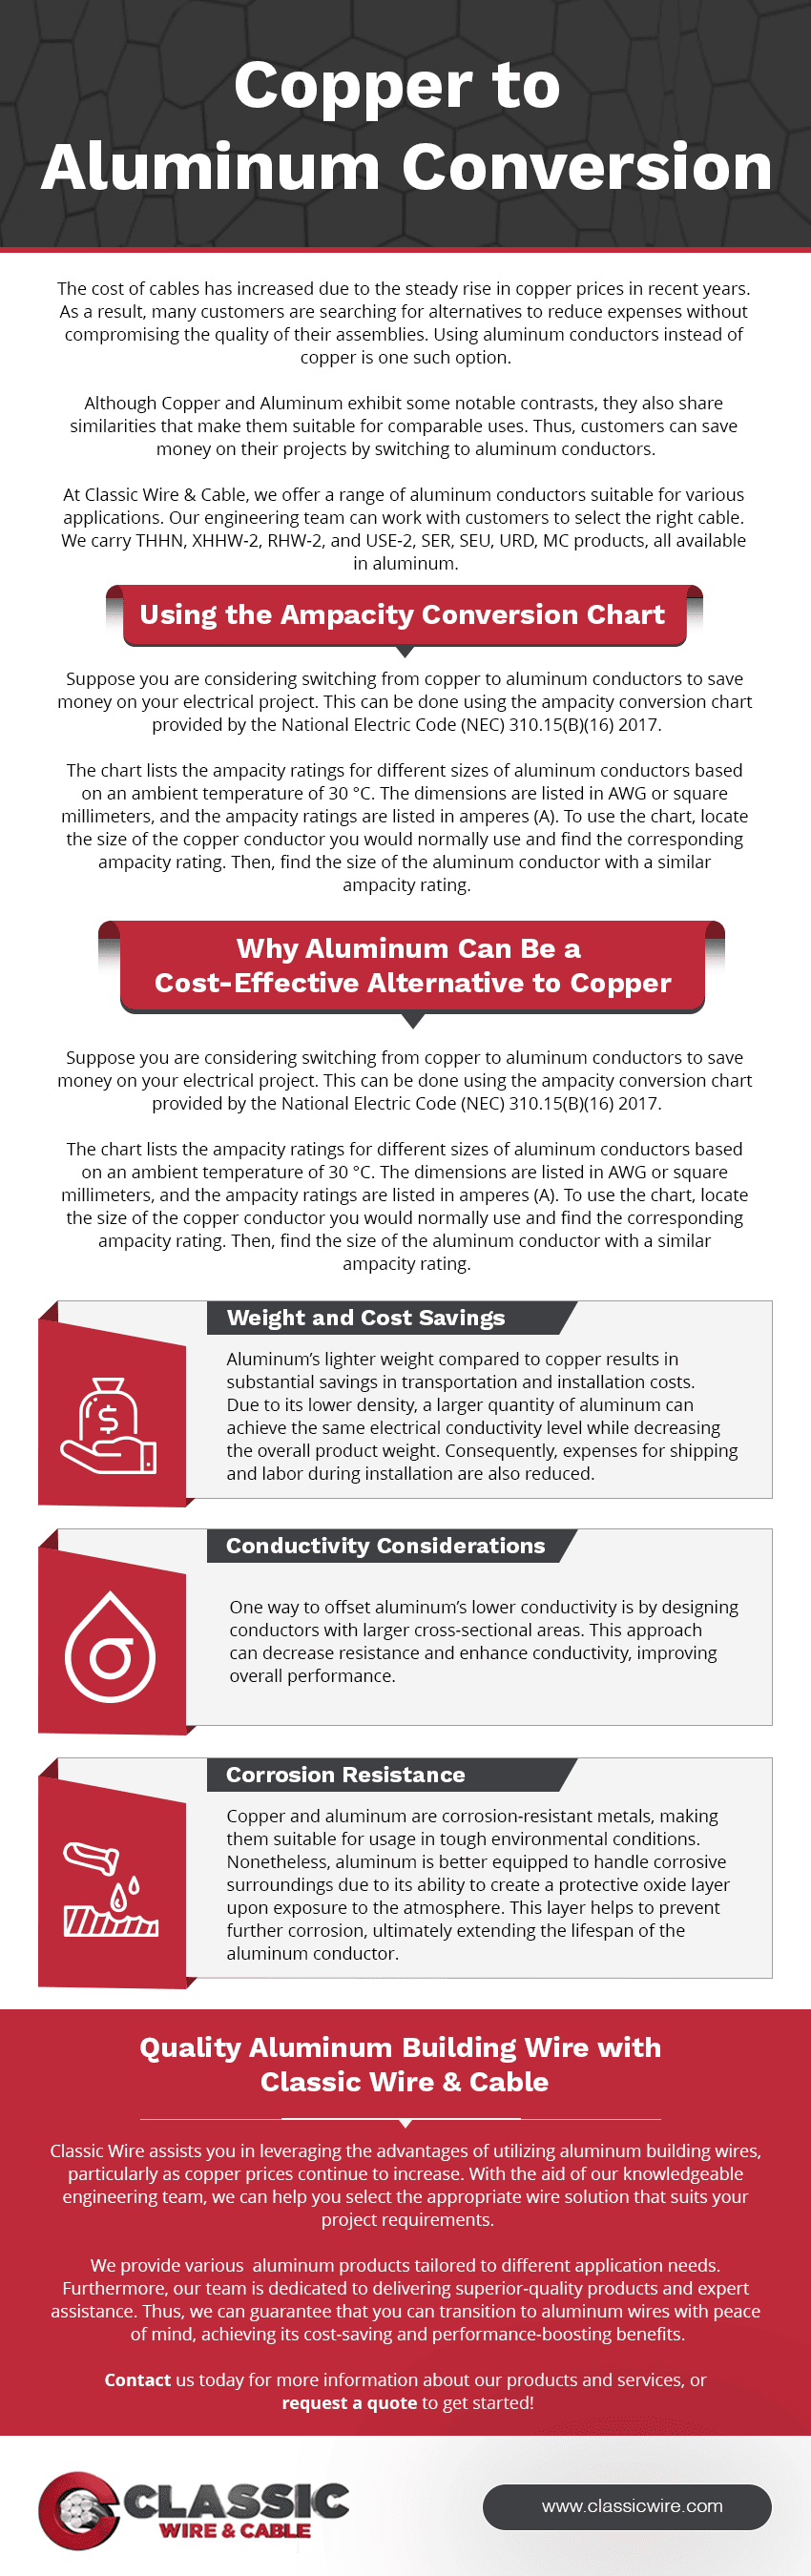 Copper-to-Aluminum-Conversion